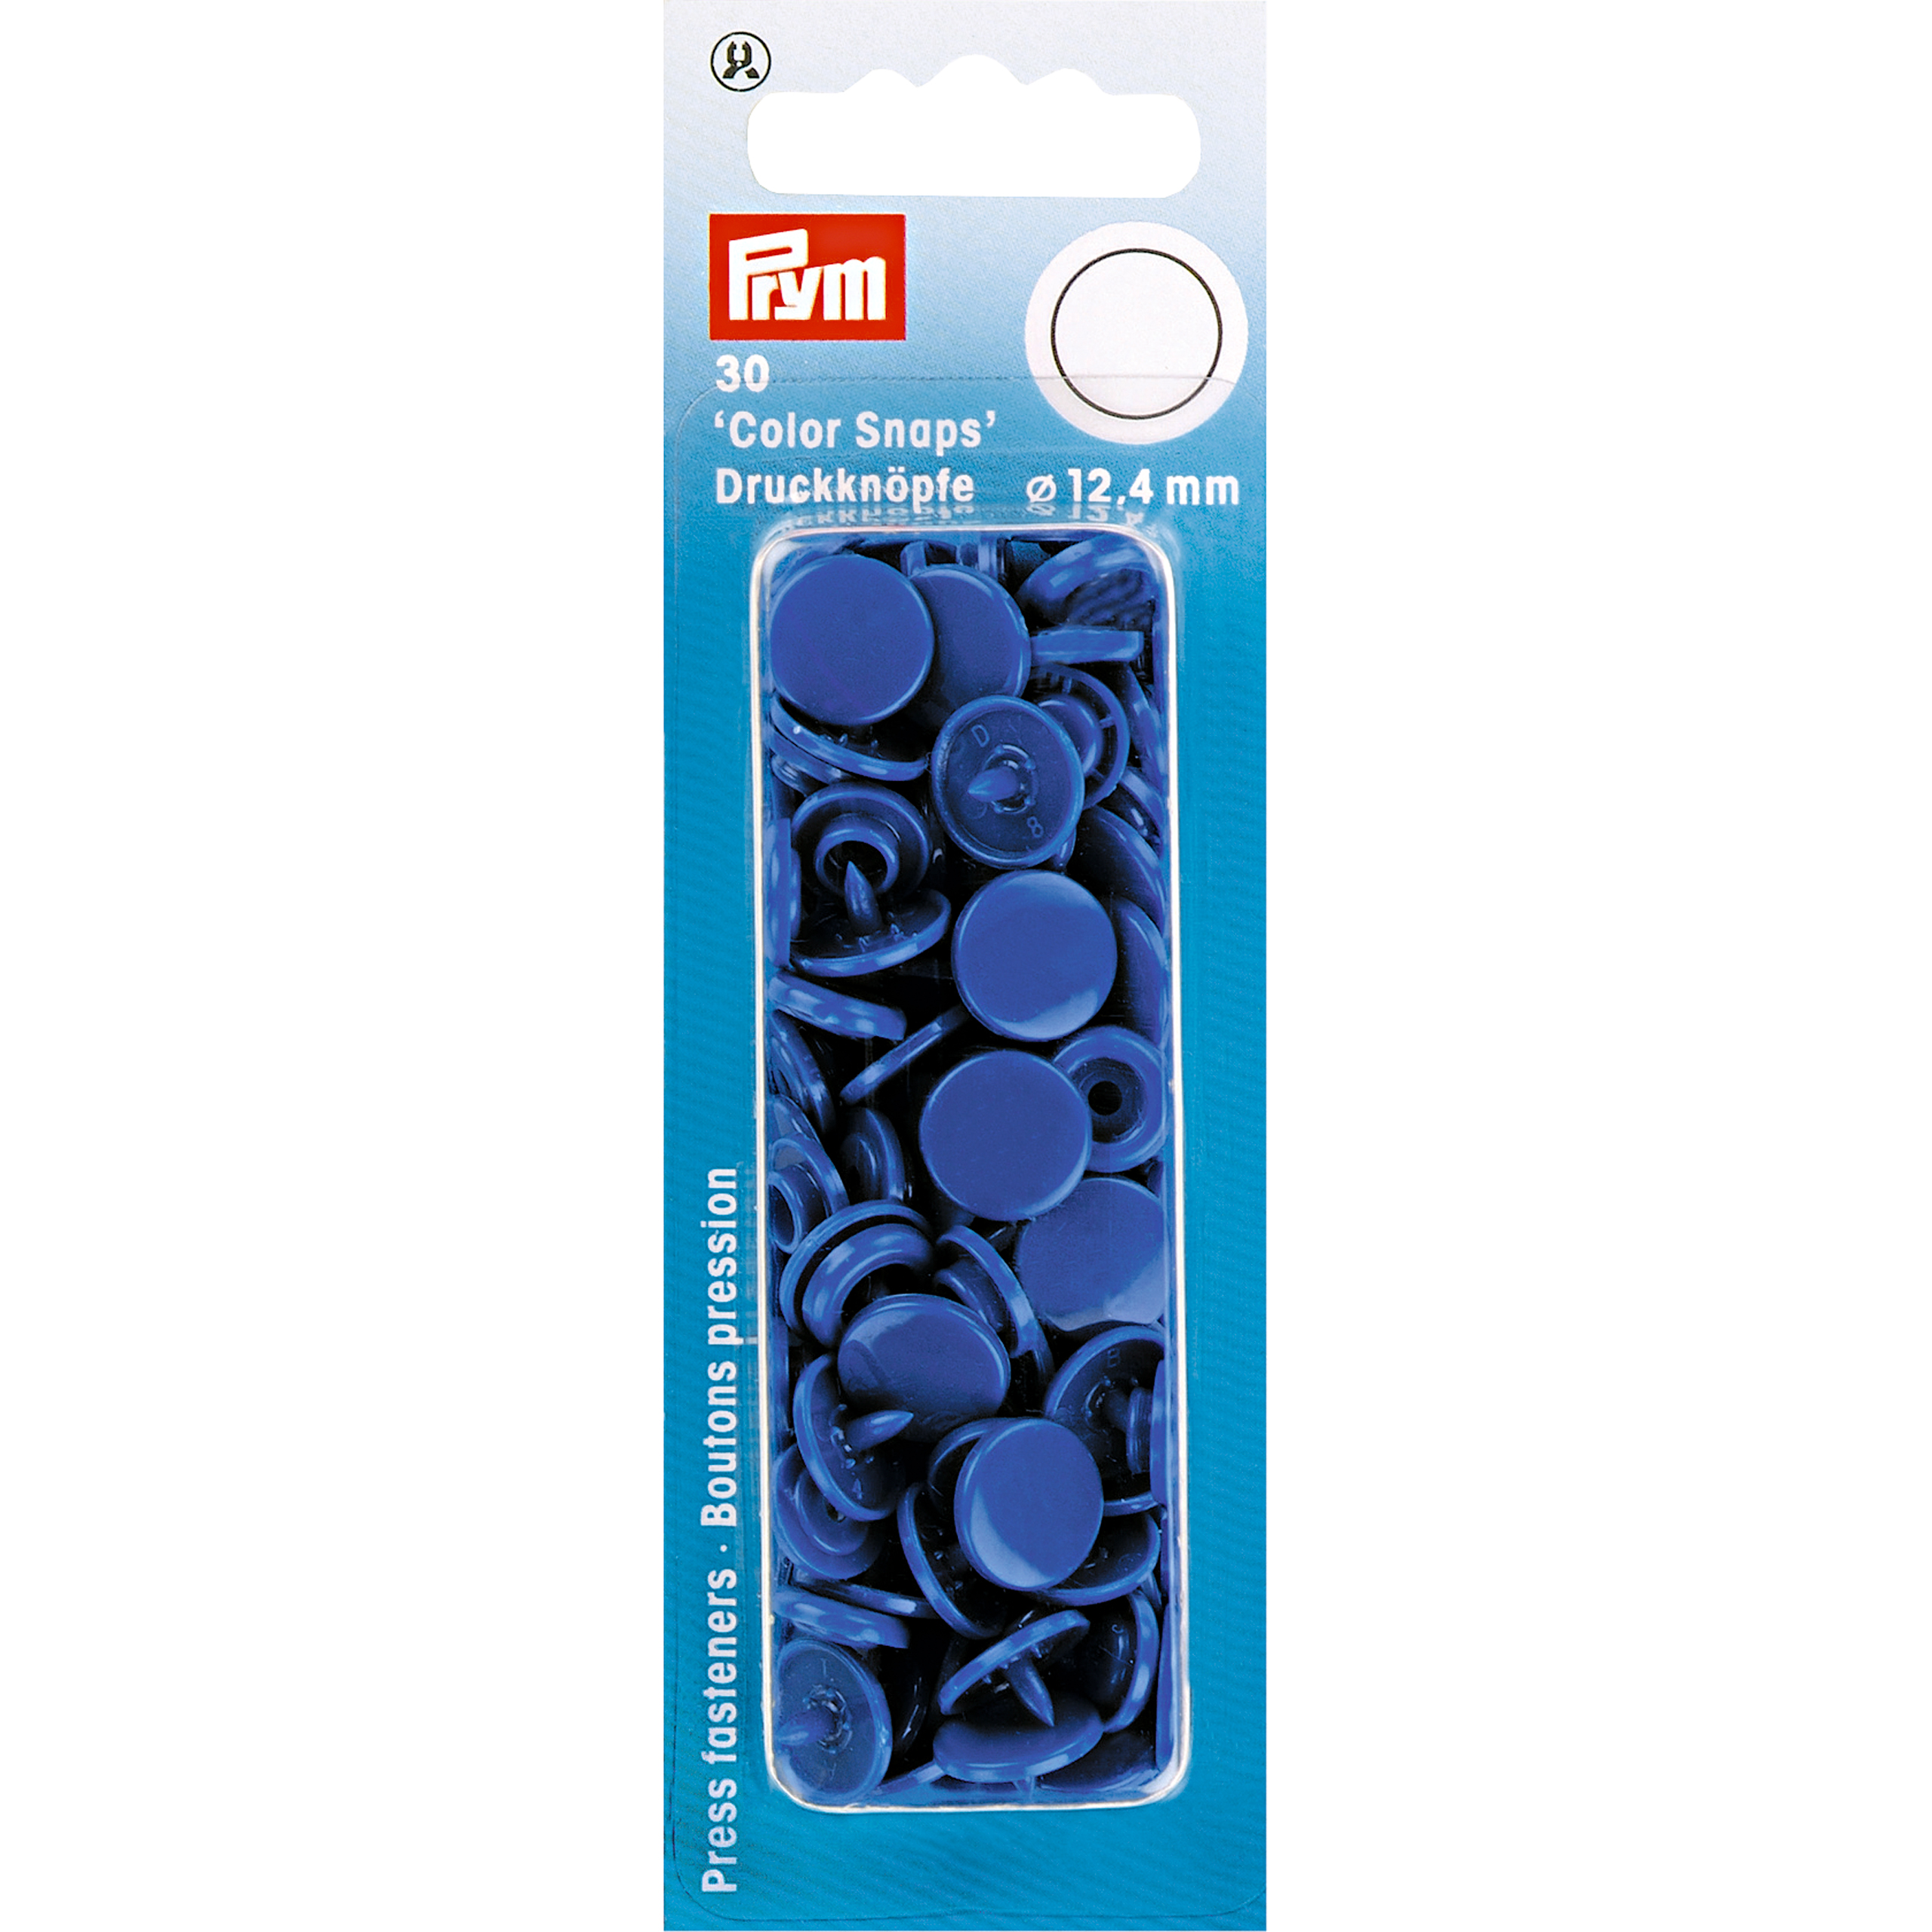 Nähfrei-Druckknöpfe Color Snaps rund 12,4 mm 30 St von Prym blau